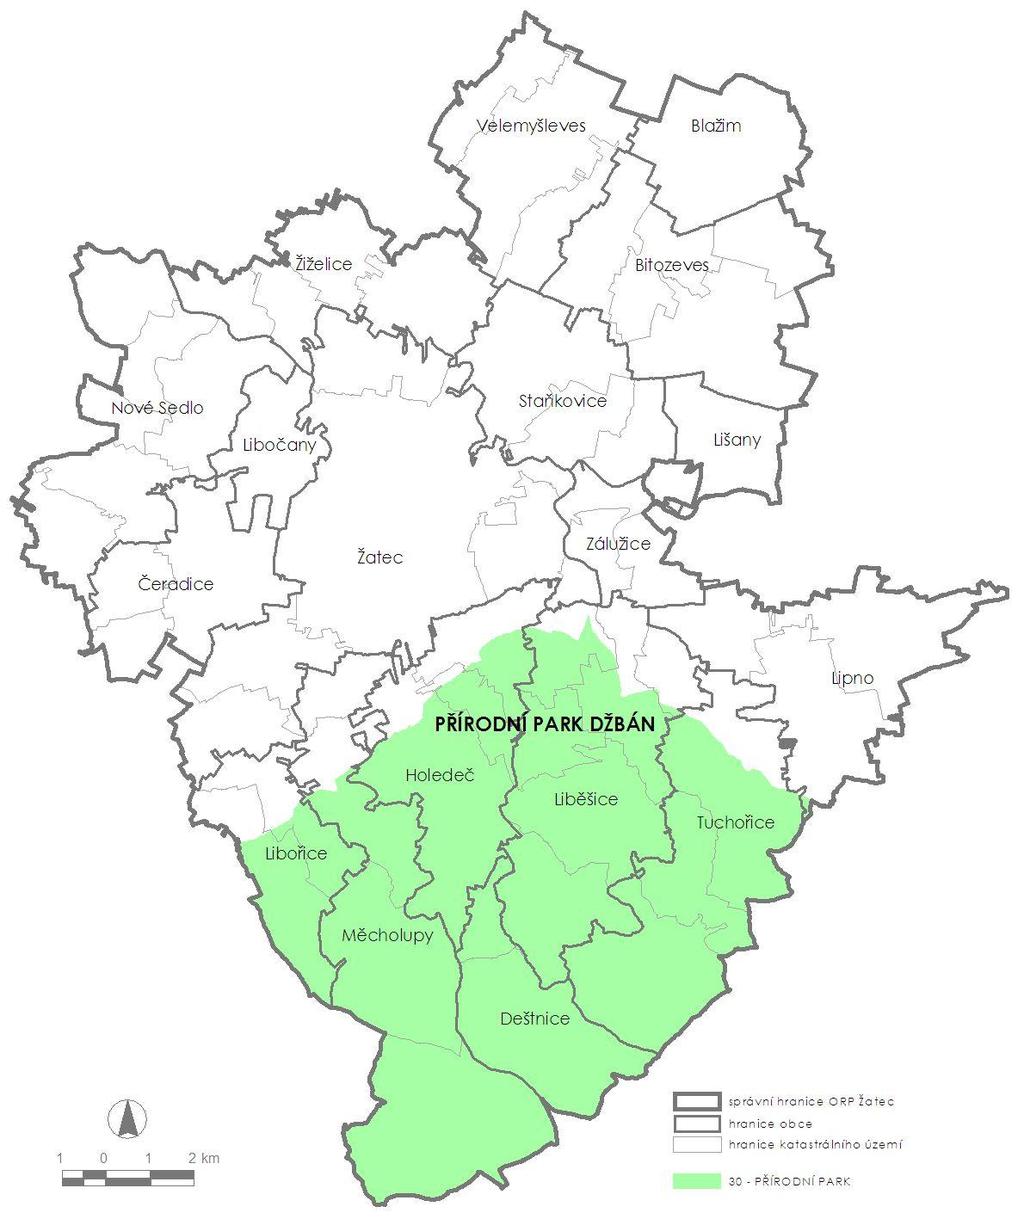 PŘÍRODNÍ PARK Na území SO ORP Žatec se nachází jediný Přírodní park Džbán, který je vymezen na území obcí Deštnice, Holedeč, Liběšice, Libořice, Měcholupy a Tuchořice.